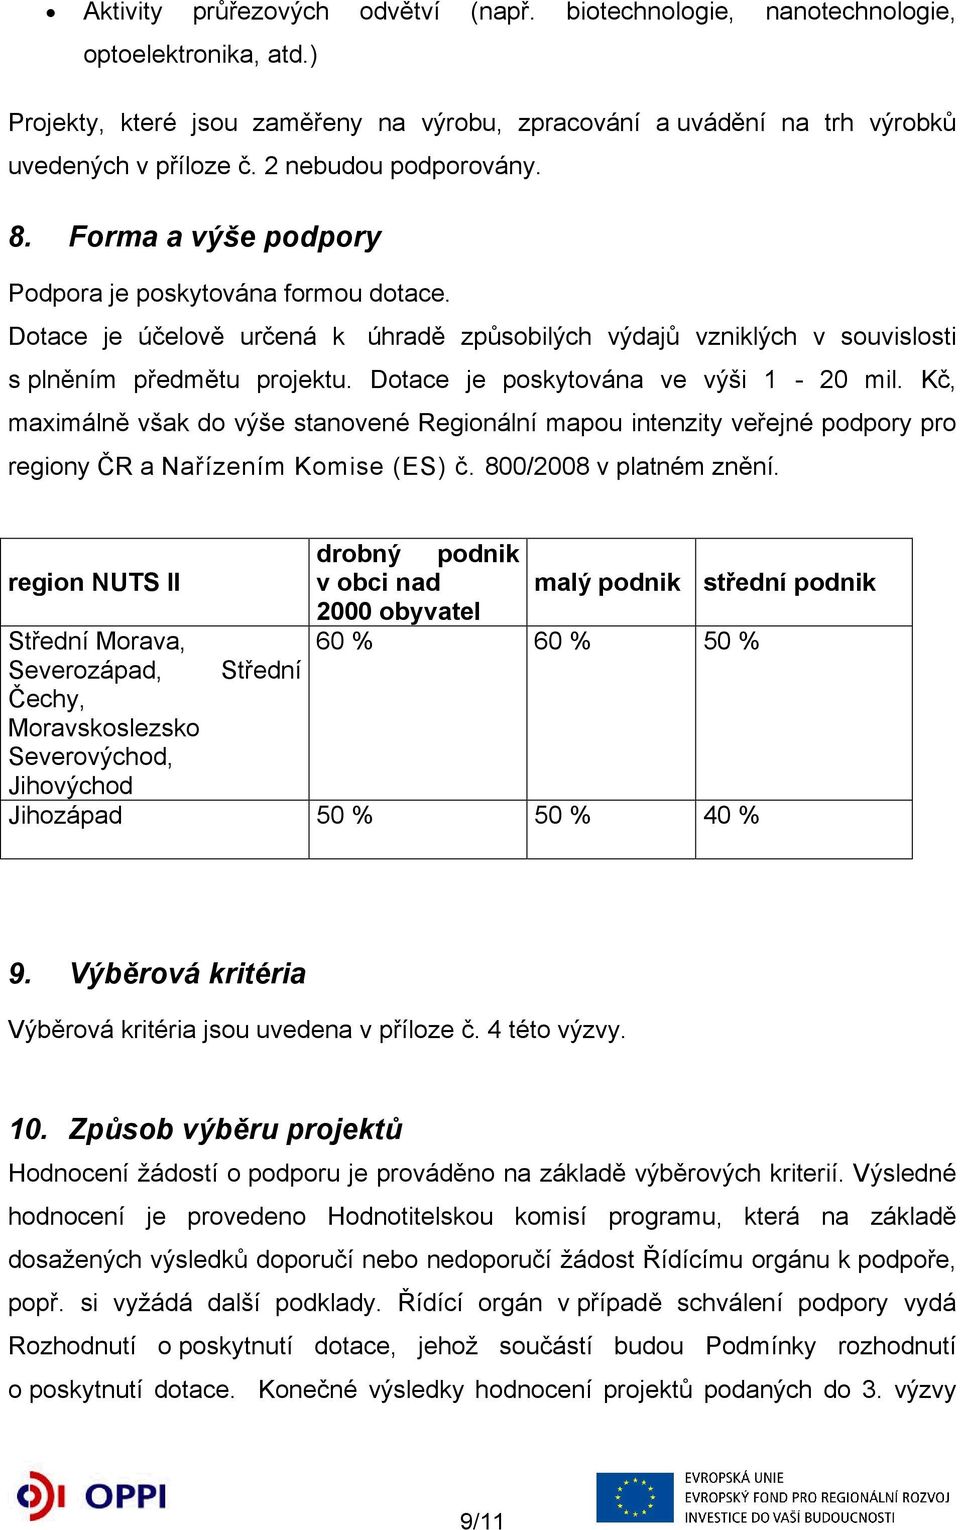 Dotace je poskytována ve výši 1-20 mil. Kč, maximálně však do výše stanovené Regionální mapou intenzity veřejné podpory pro regiony ČR a Nařízením Komise (ES) č. 800/2008 v platném znění.